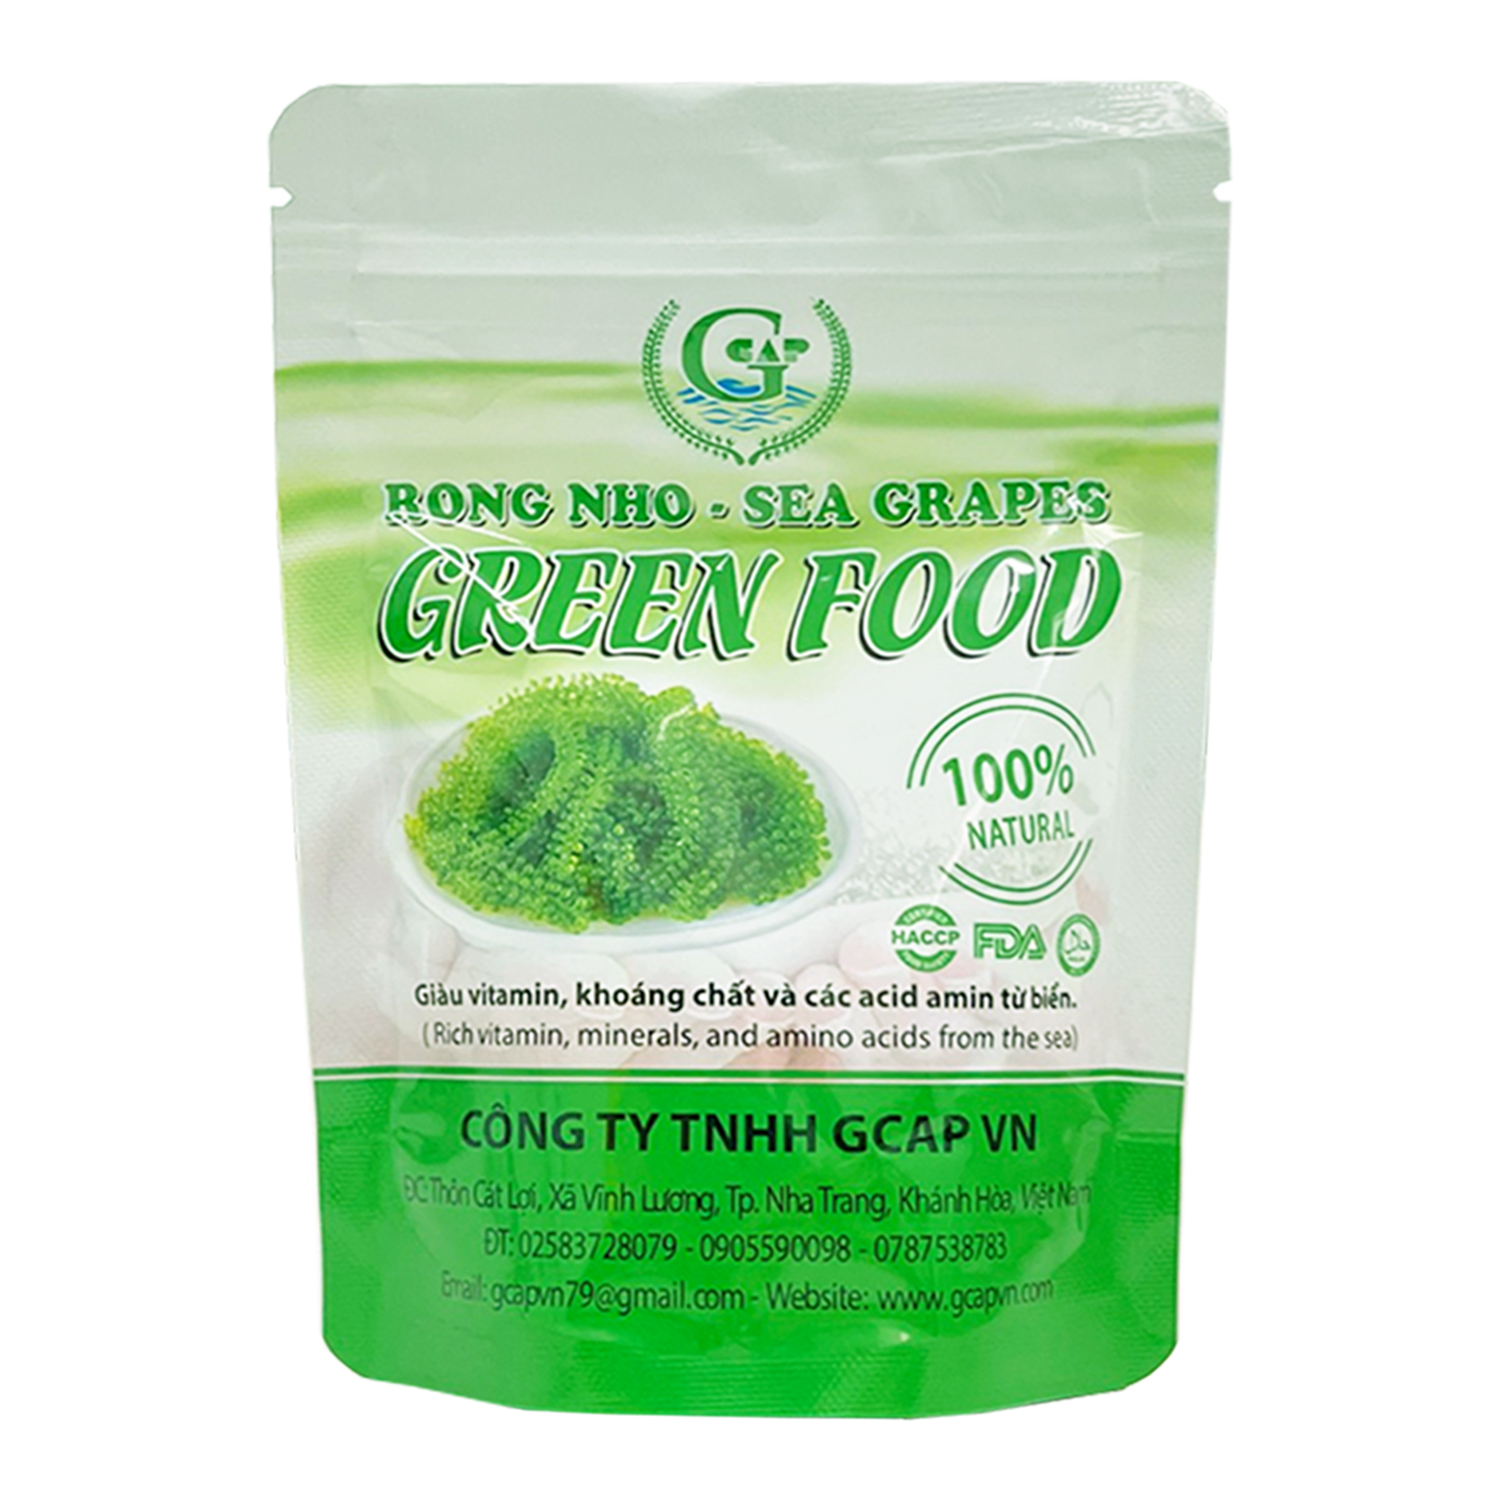 Rong nho biển GREEN FOOD - Sea grapes - Giàu vitamin, khoáng chất và các axit amin  (Túi zipper 100G)